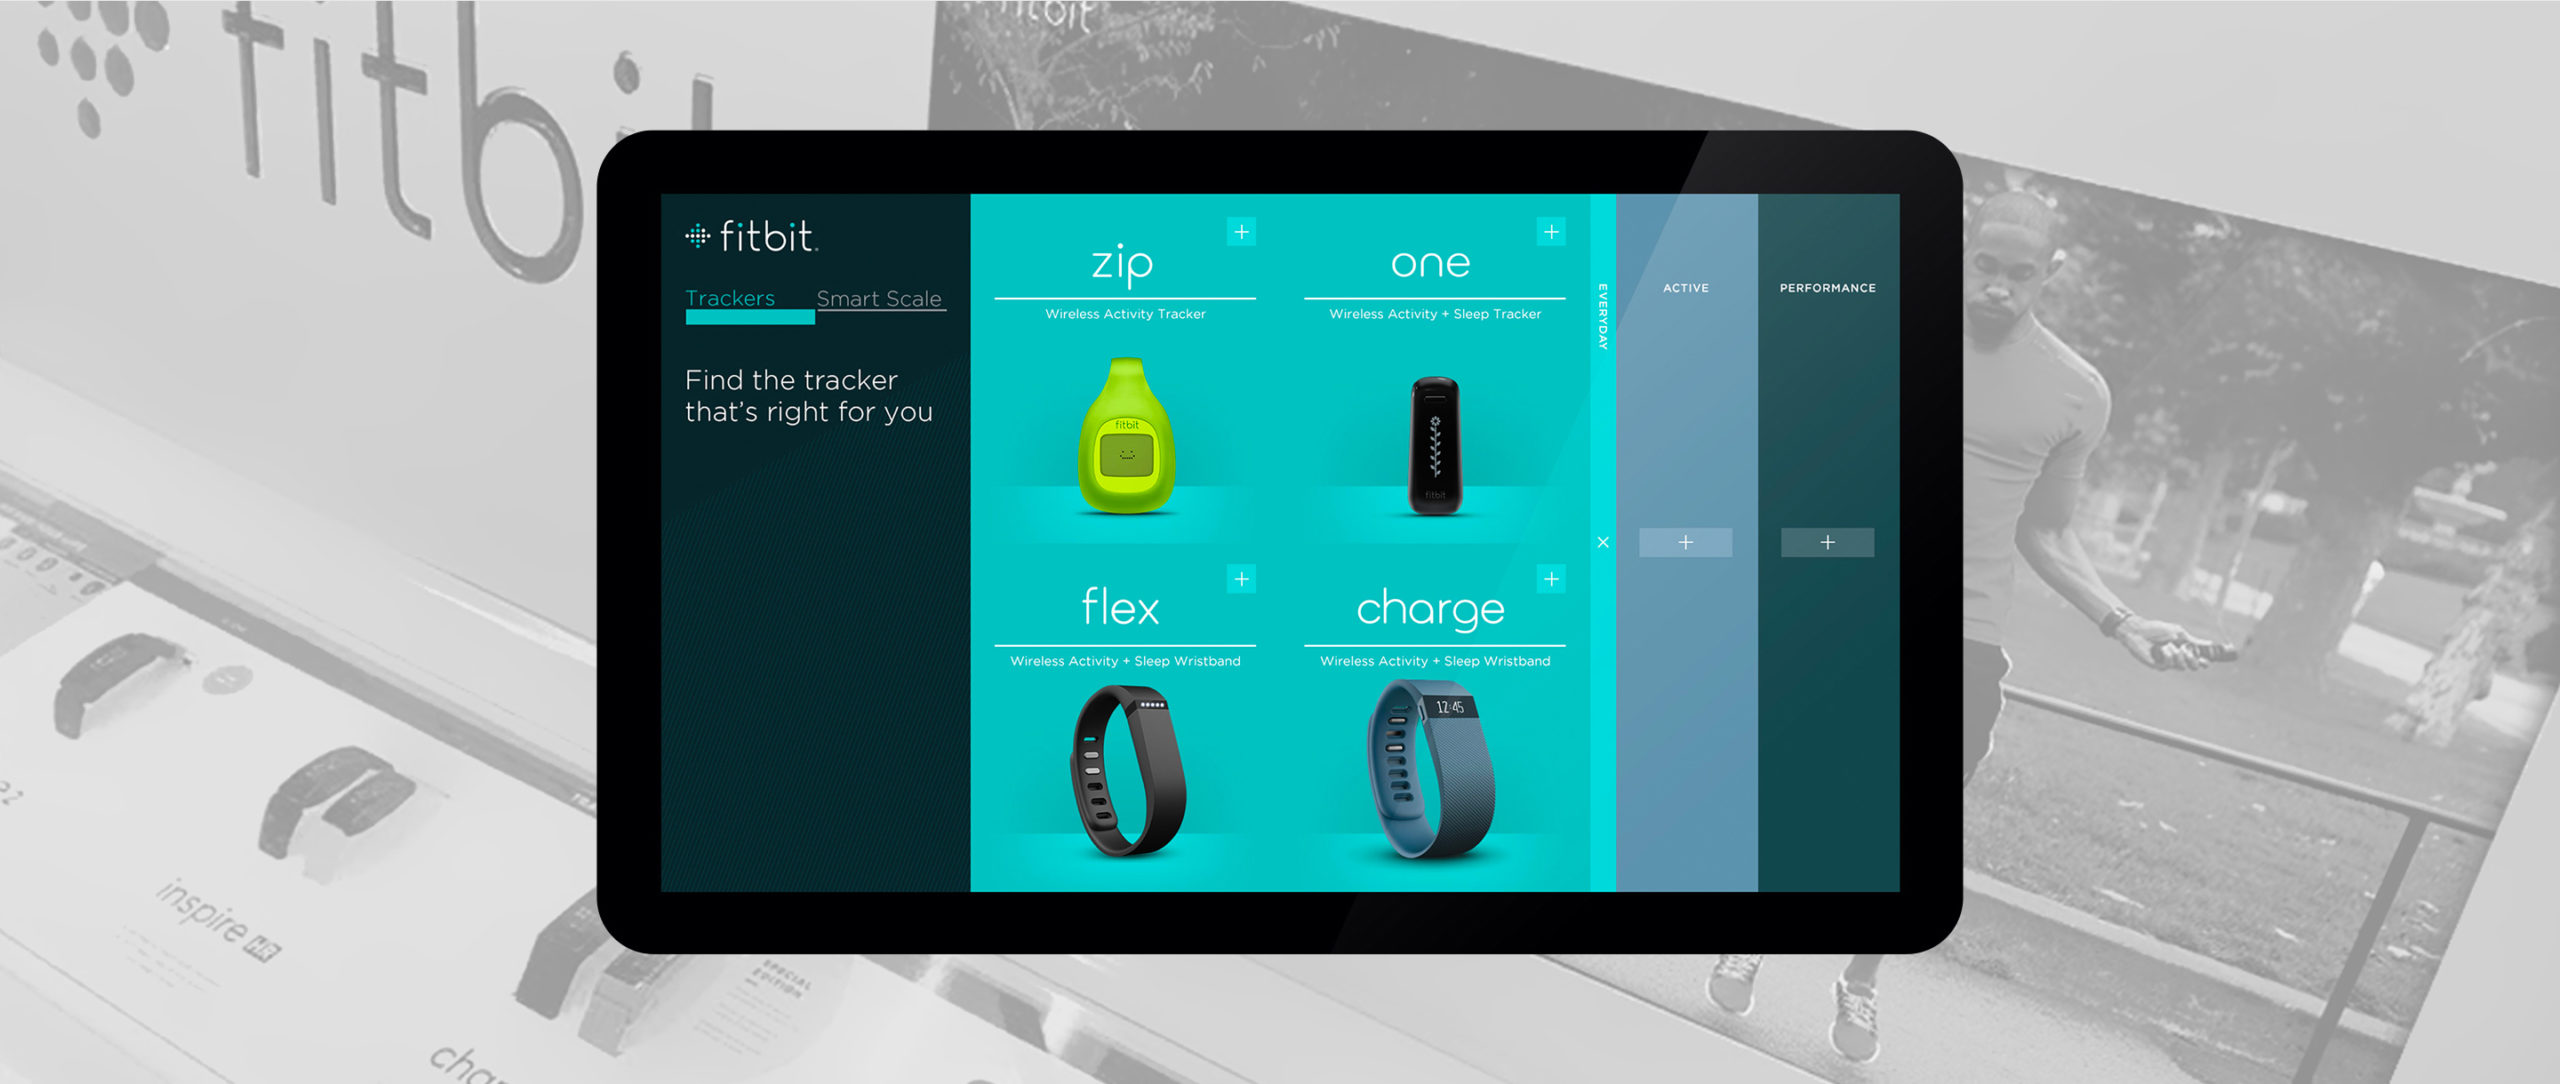 Fitbit Client App 2